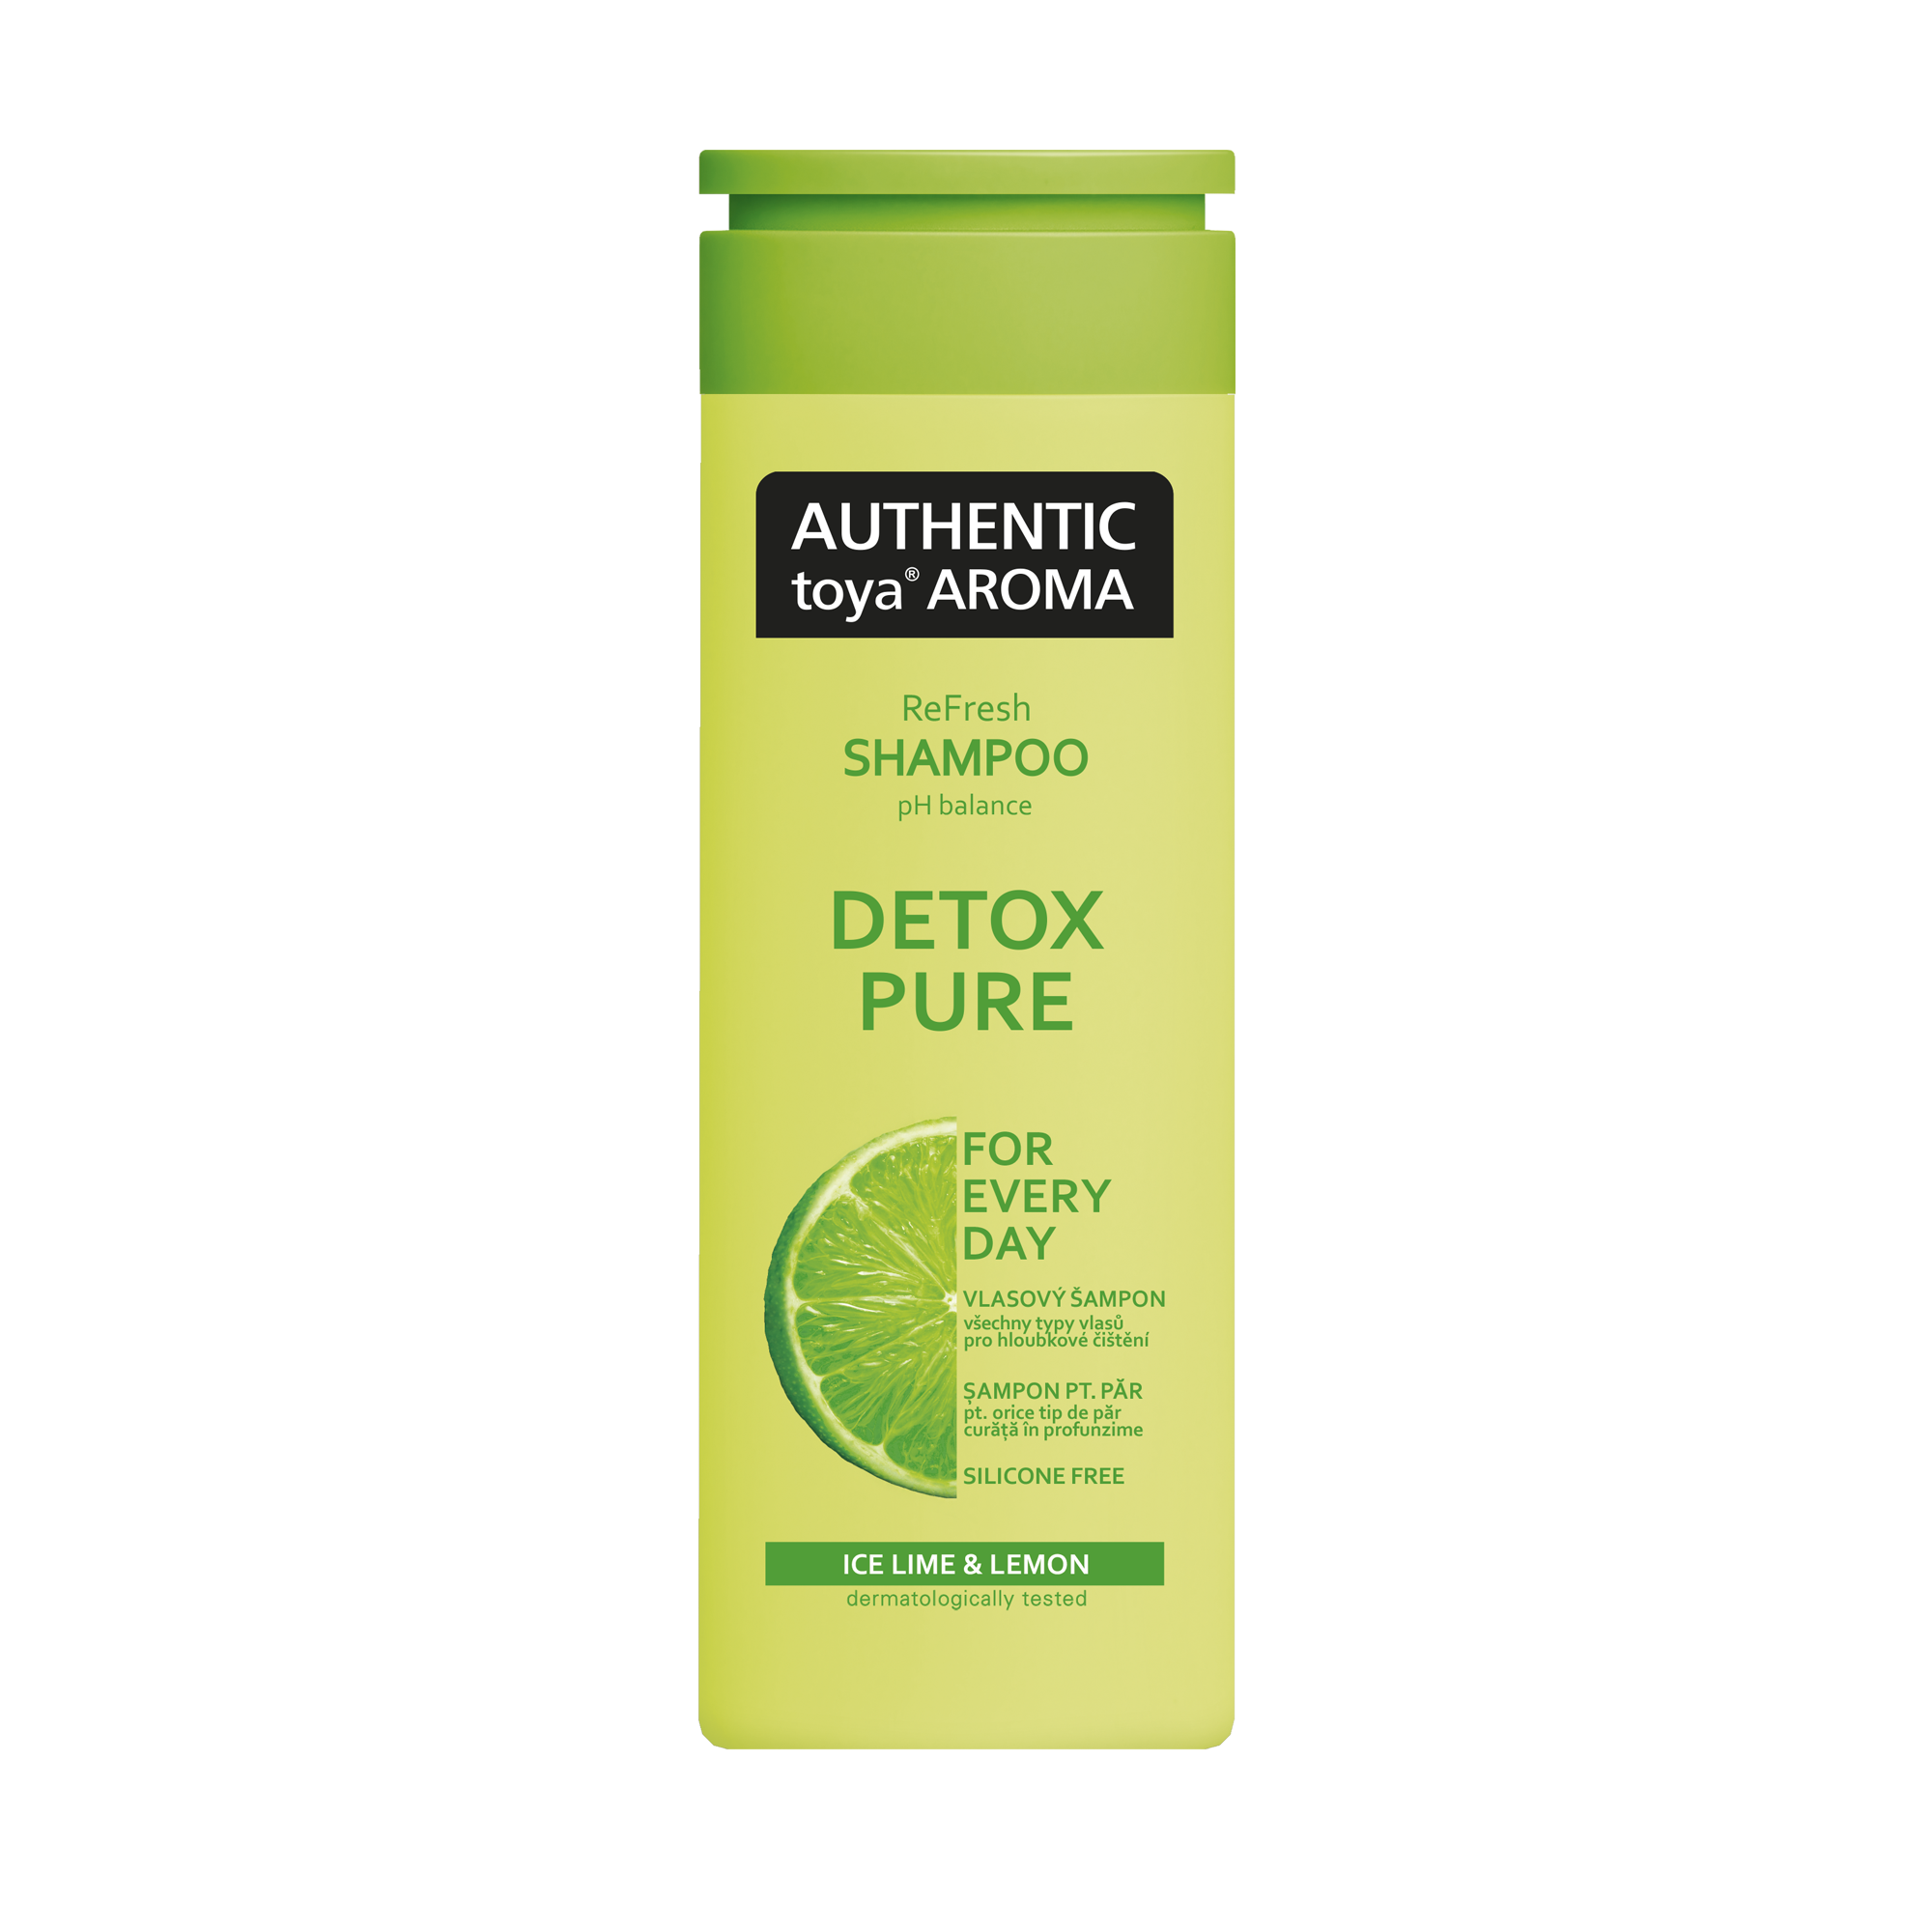 AUTHENTIC toya AROMA Detox Pure shampoo